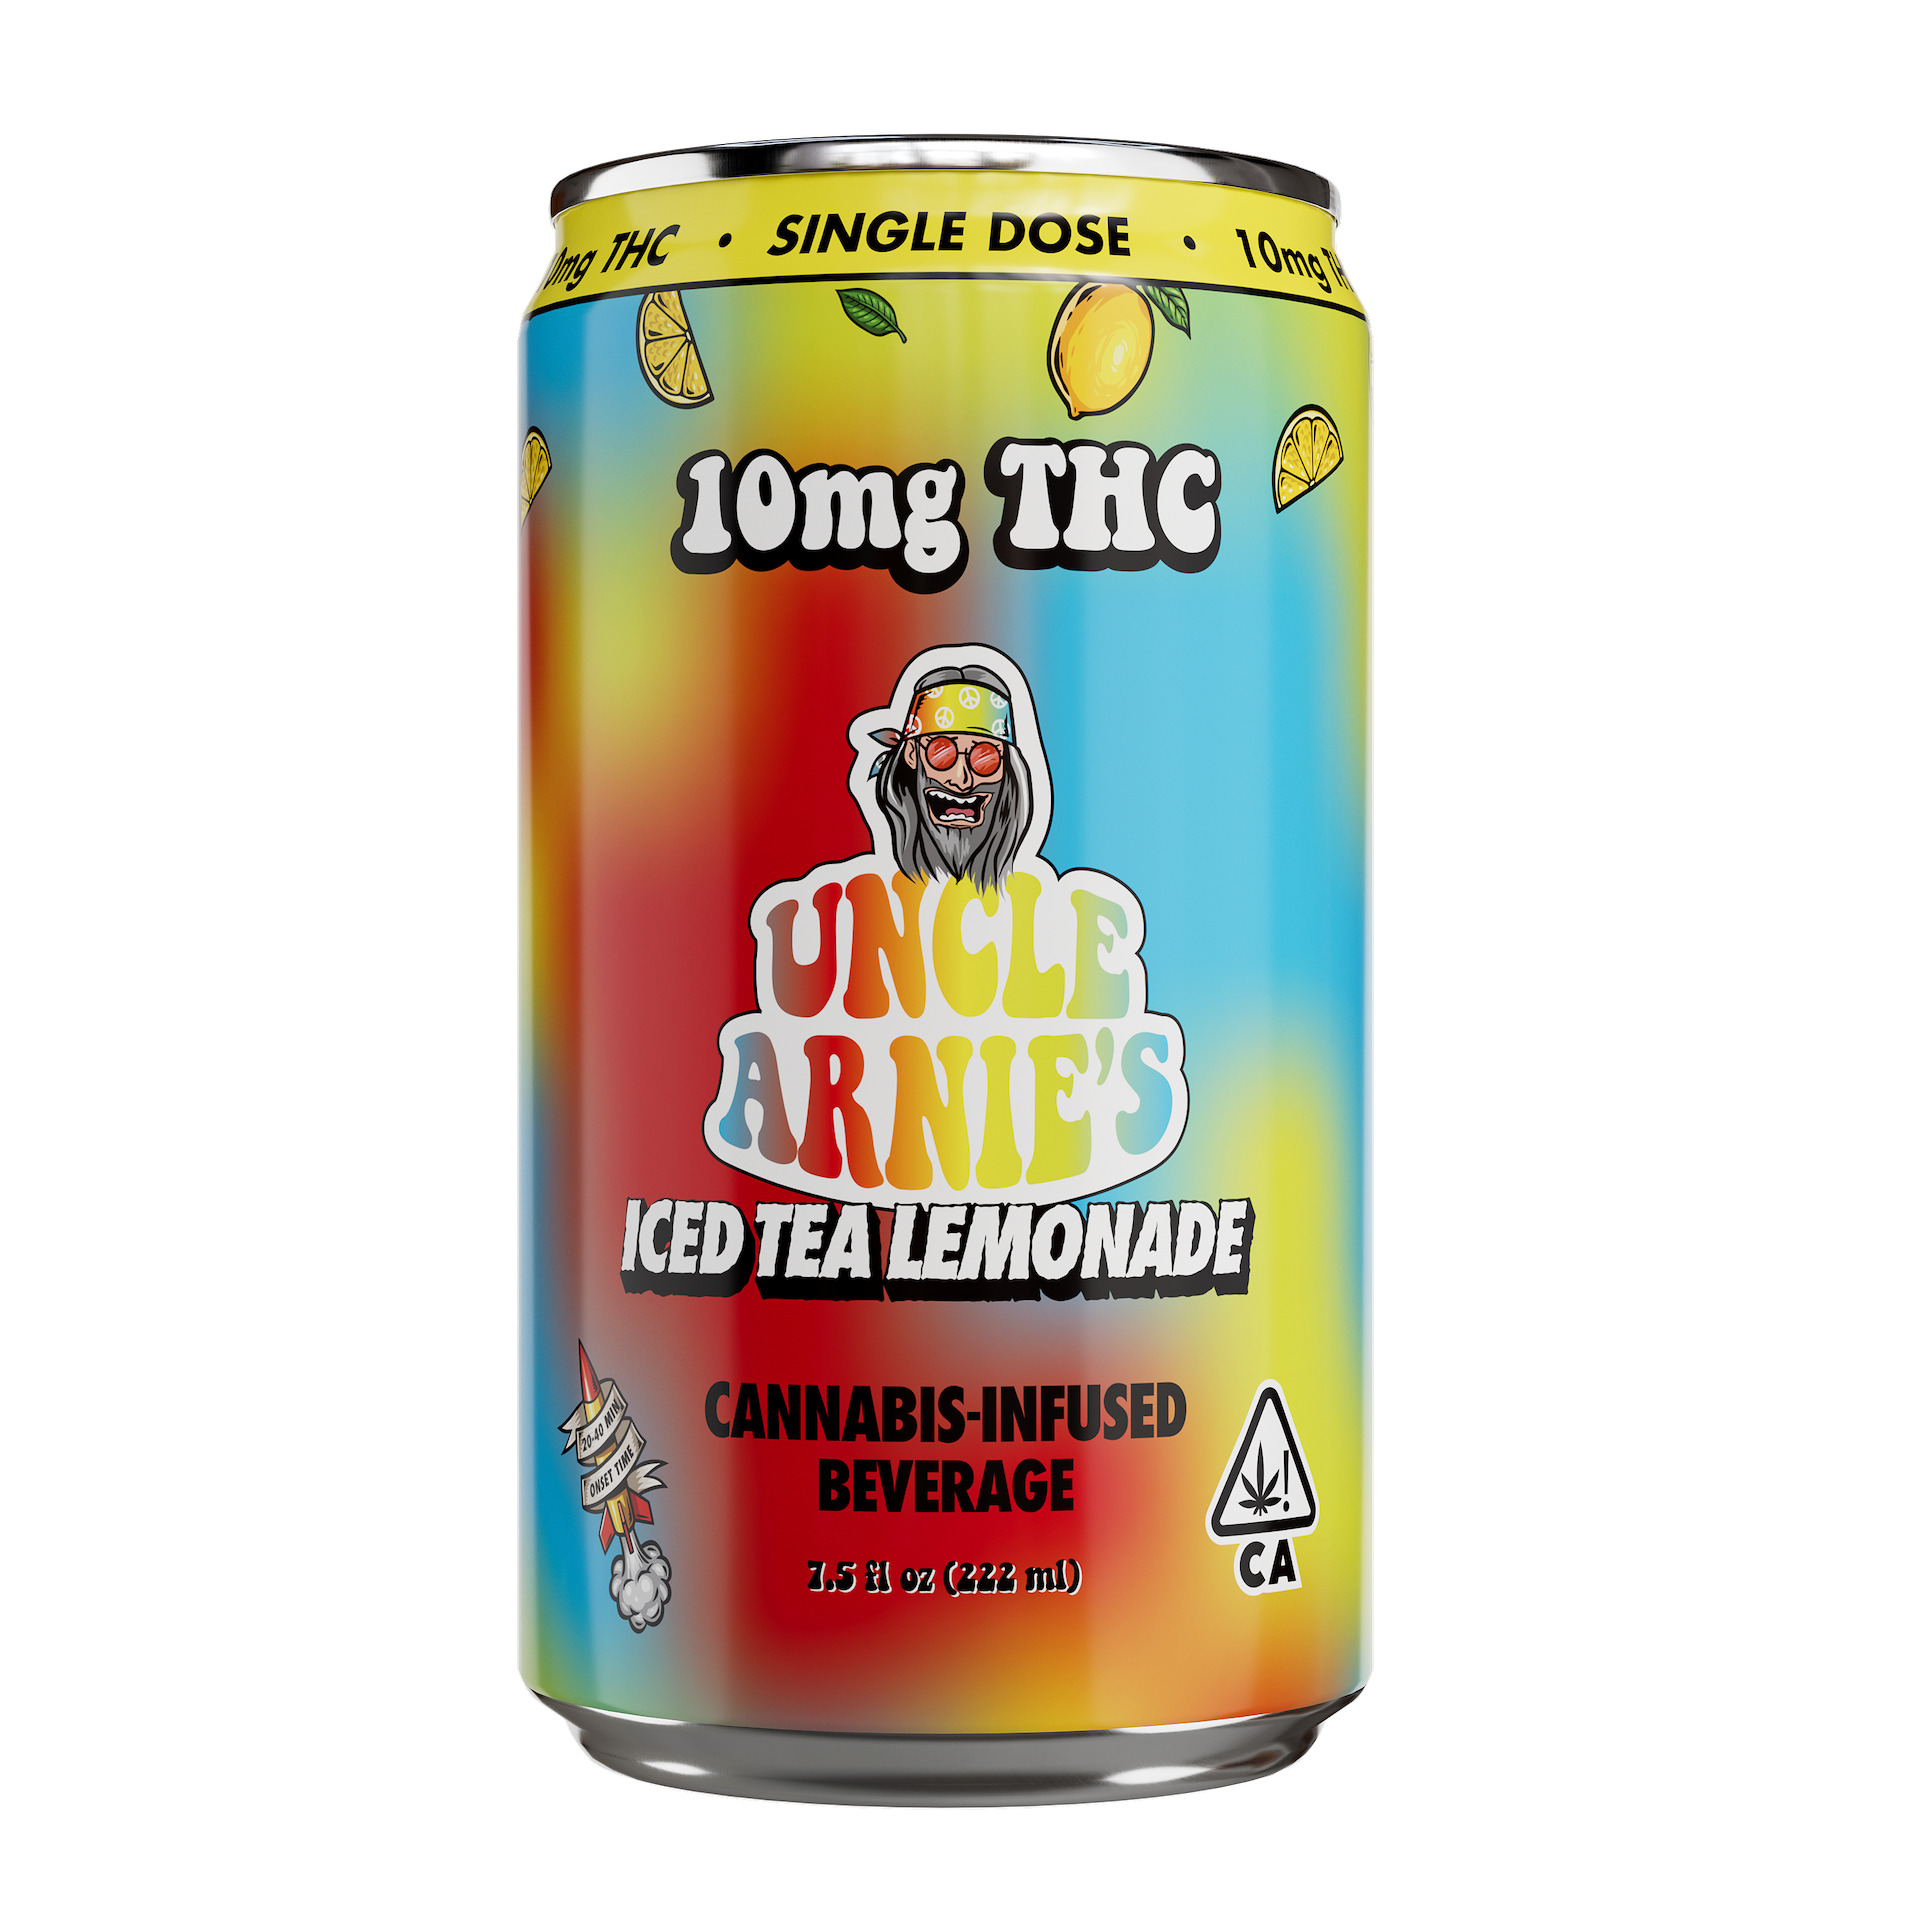 Iced Tea Lemonade (10mg)